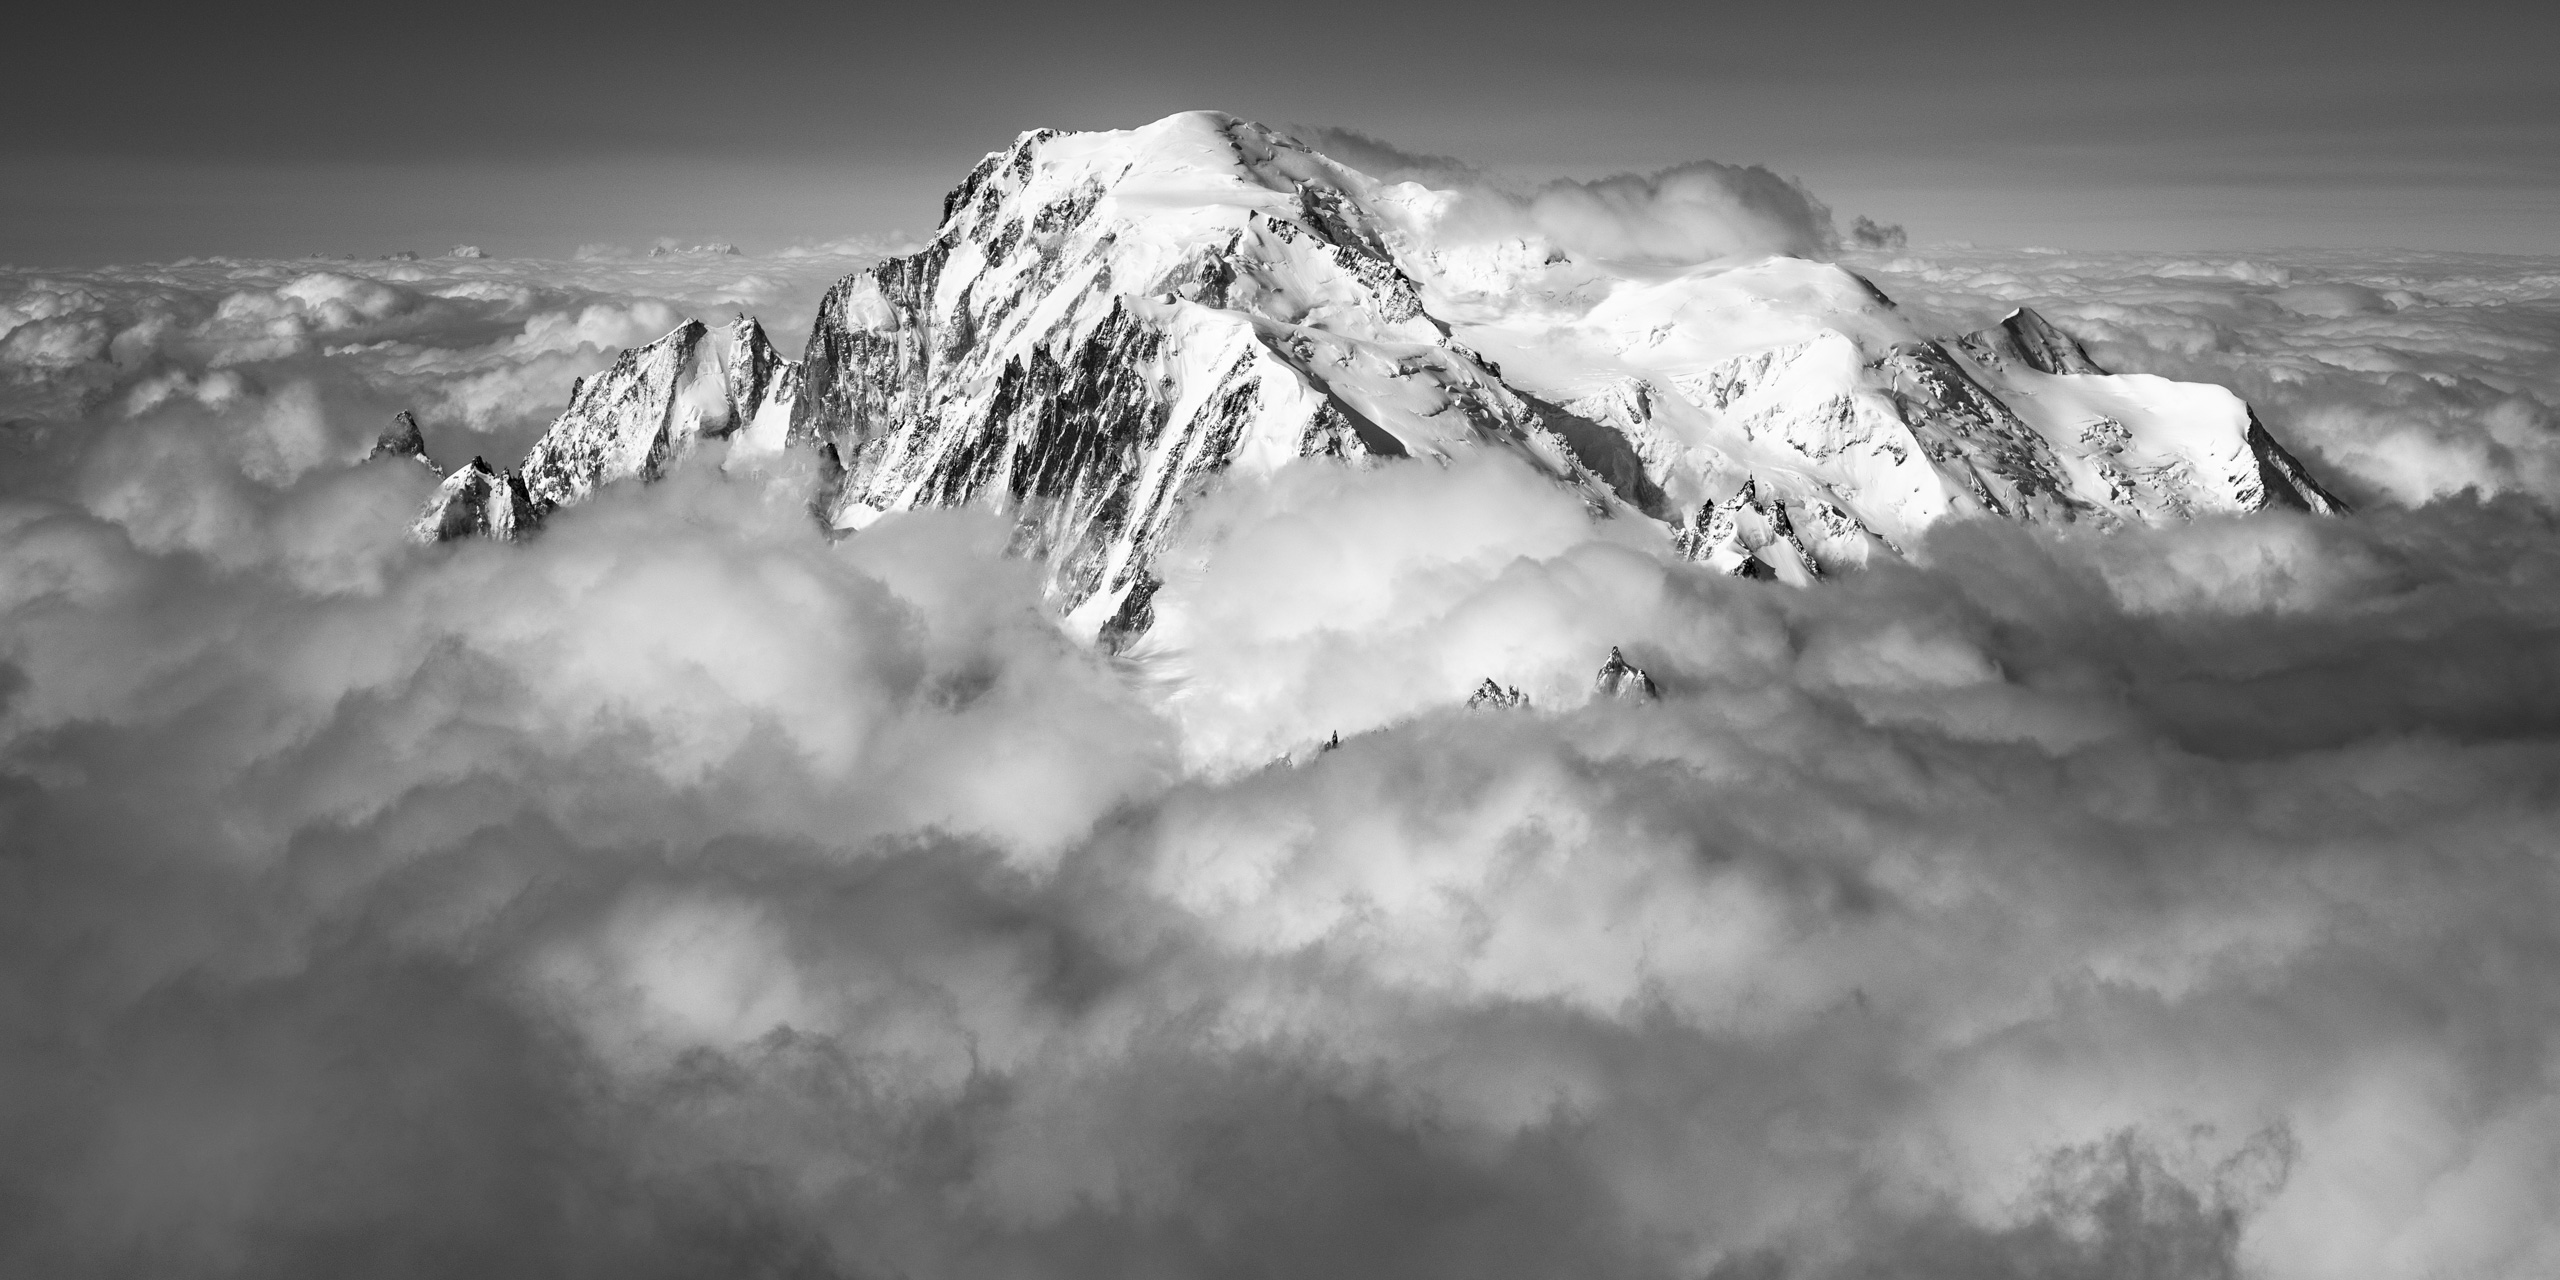 aiguille du midi telepherique - panoramic mont blanc - aiguille du midi weather cloud - artistic photo chamonix